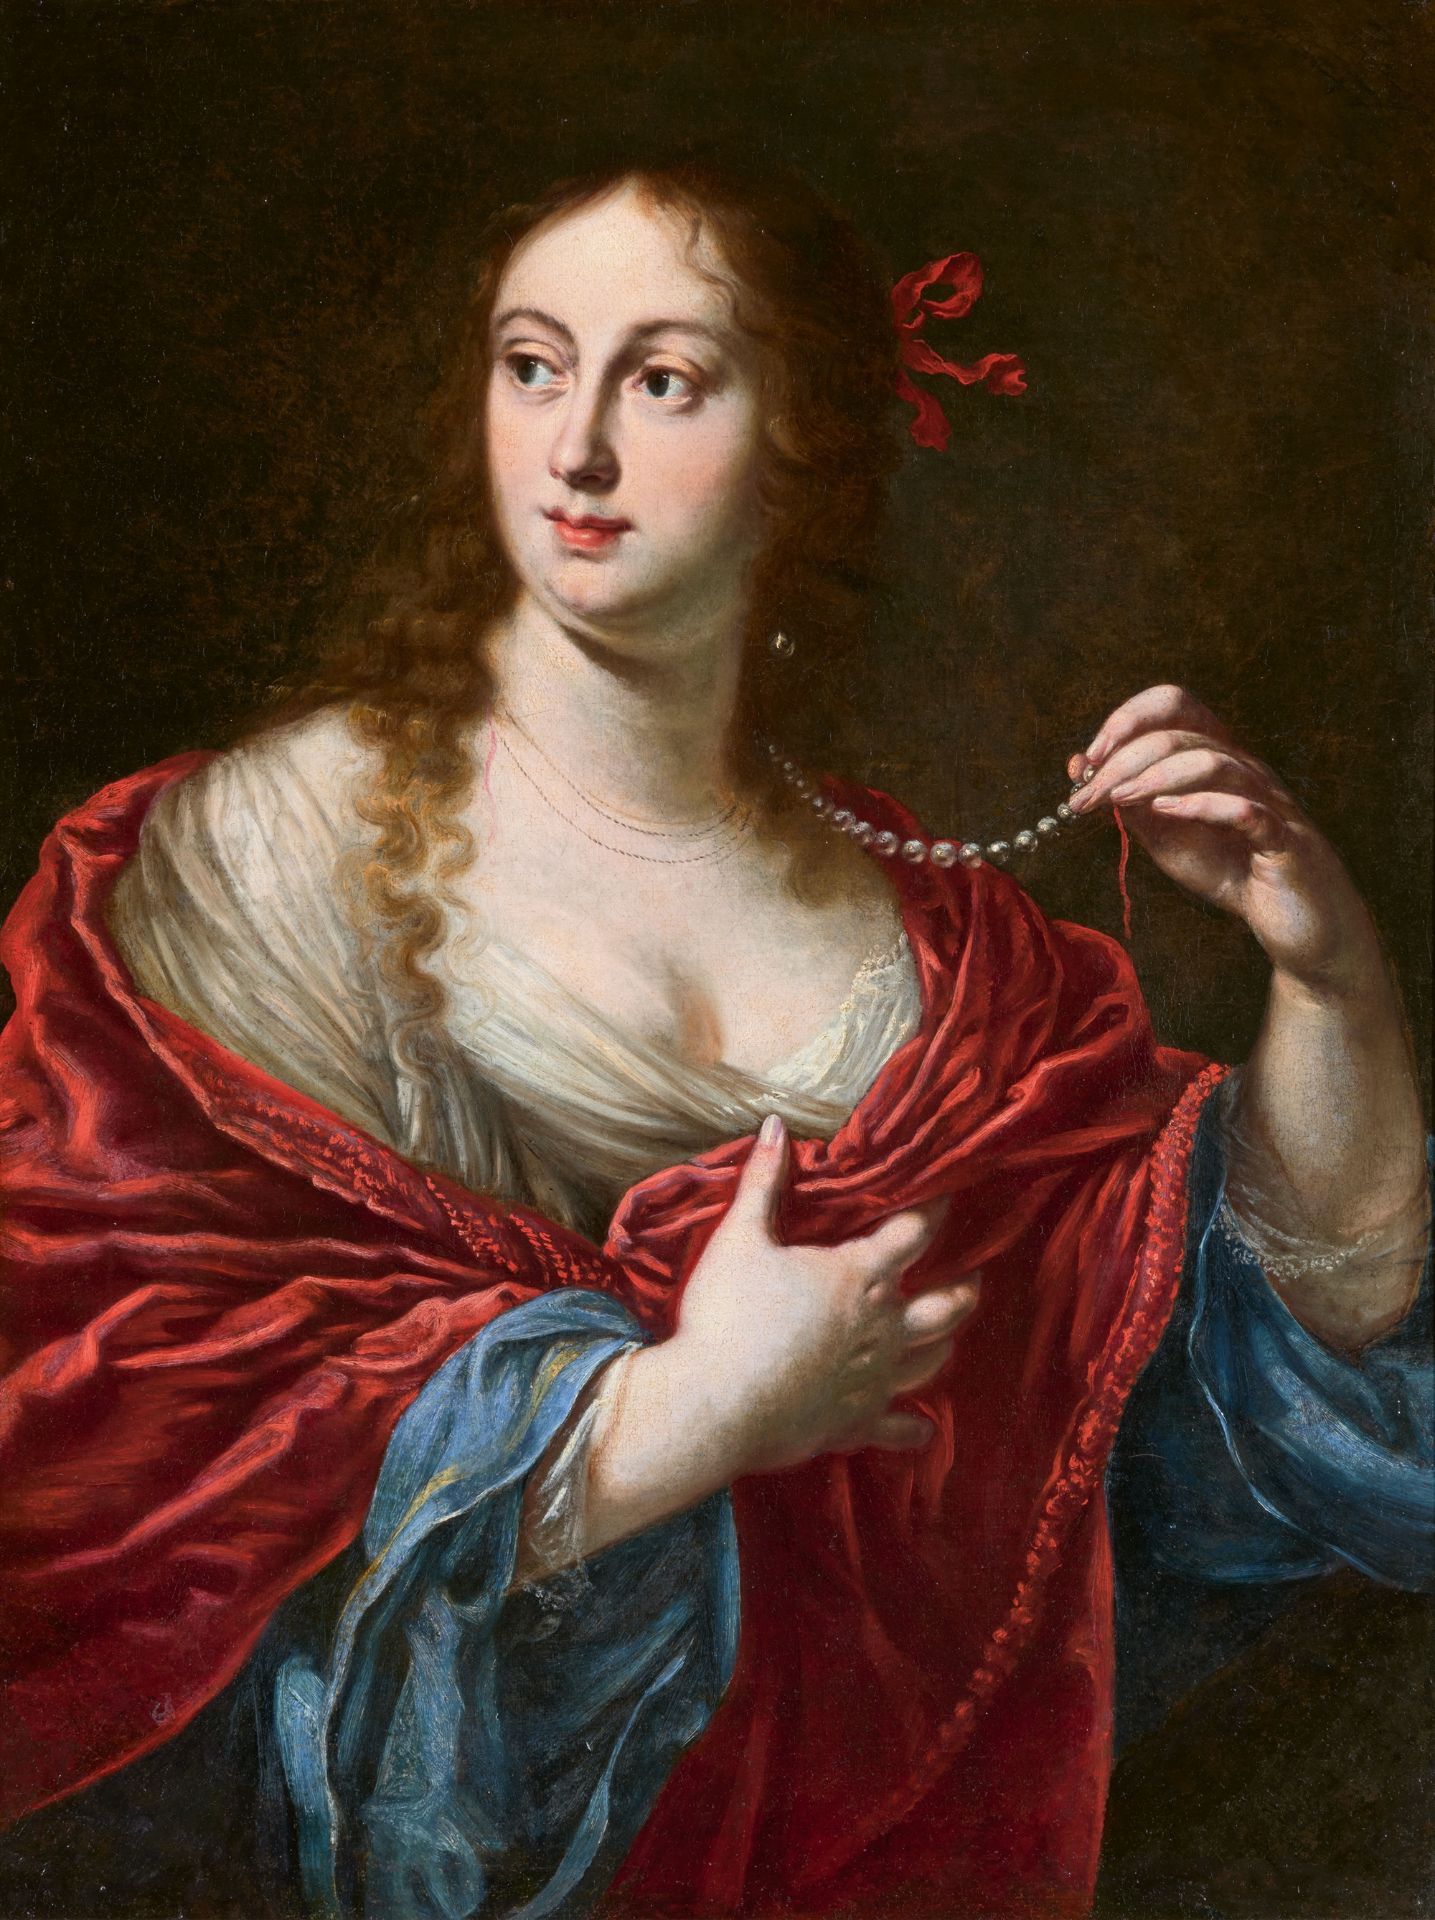 Justus Sustermans, Vittoria della Rovere, Grand Duchess of Tuscany (1622-1694), holding a Broken Pea